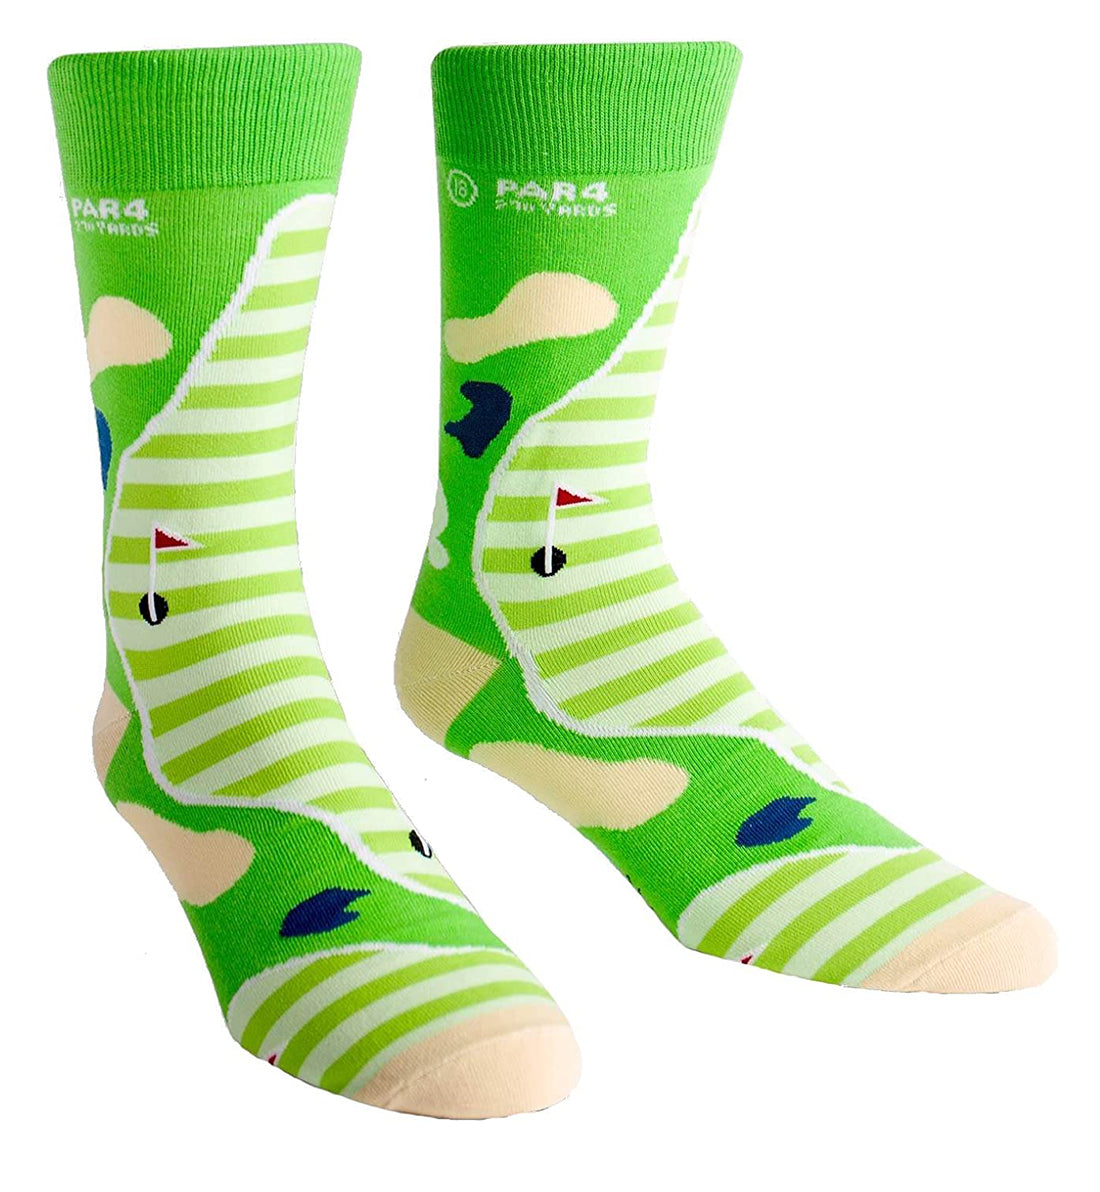 SOCK it to me Men's Crew Socks (mef0158),Par 4 - Par 4,One Size